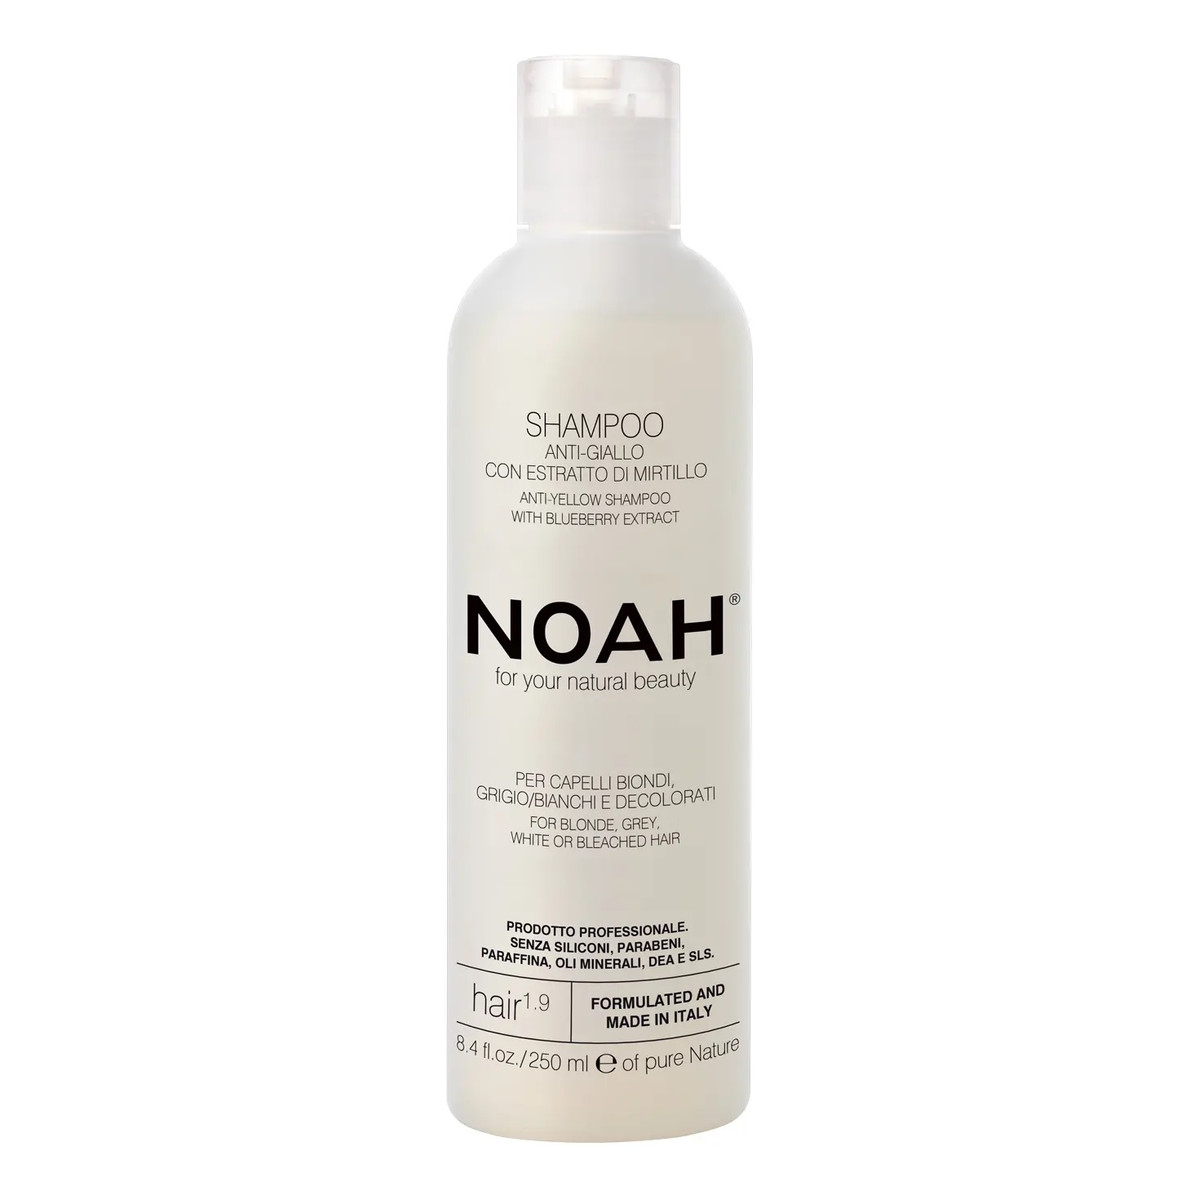 Noah Anti-yellow shampoo with blueberry extract szampon do włosów blond i siwych 250ml